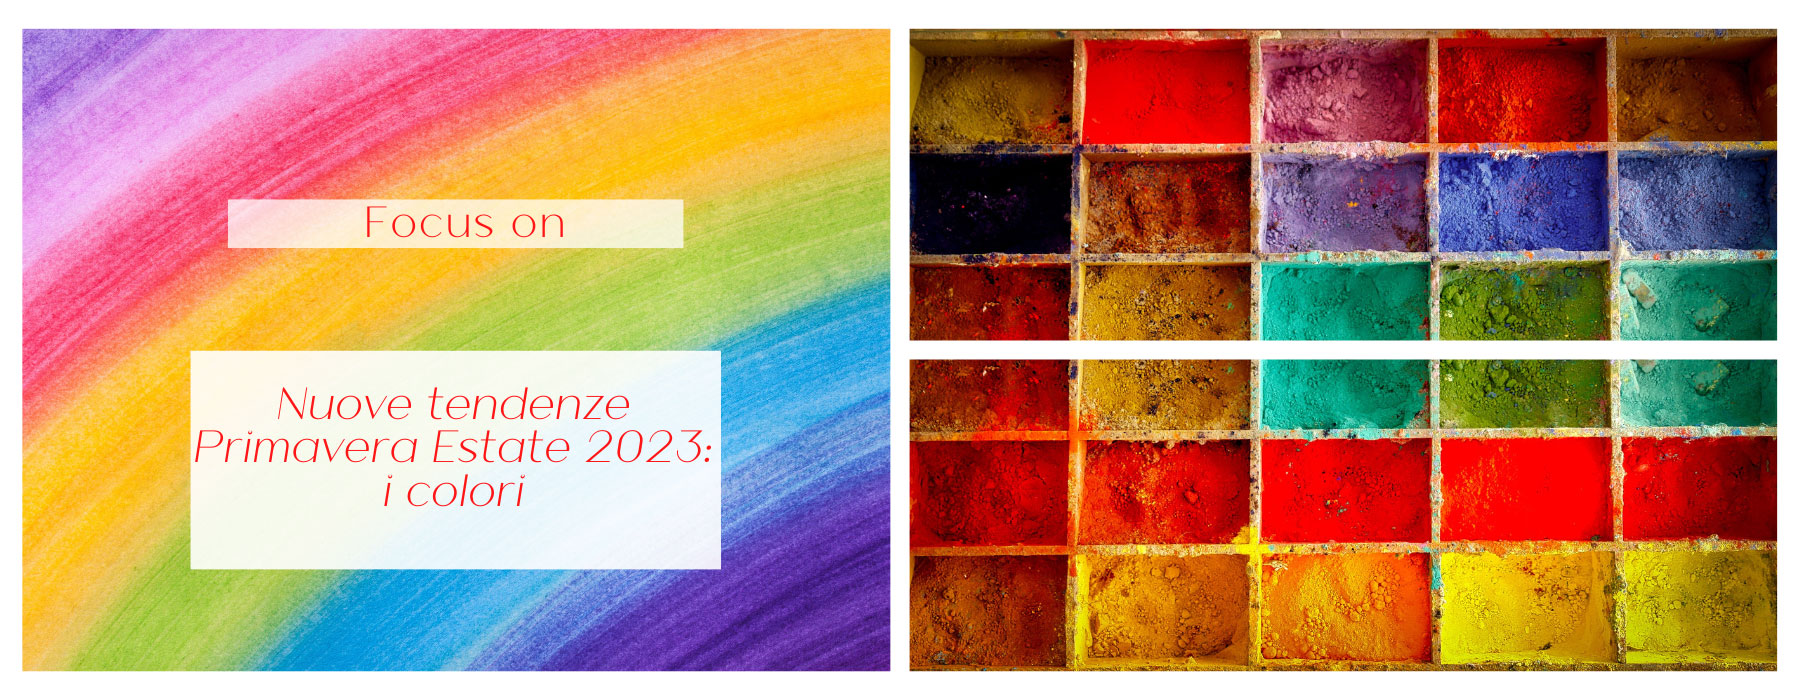 Nuove tendenze Primavera Estate 2023: i colori